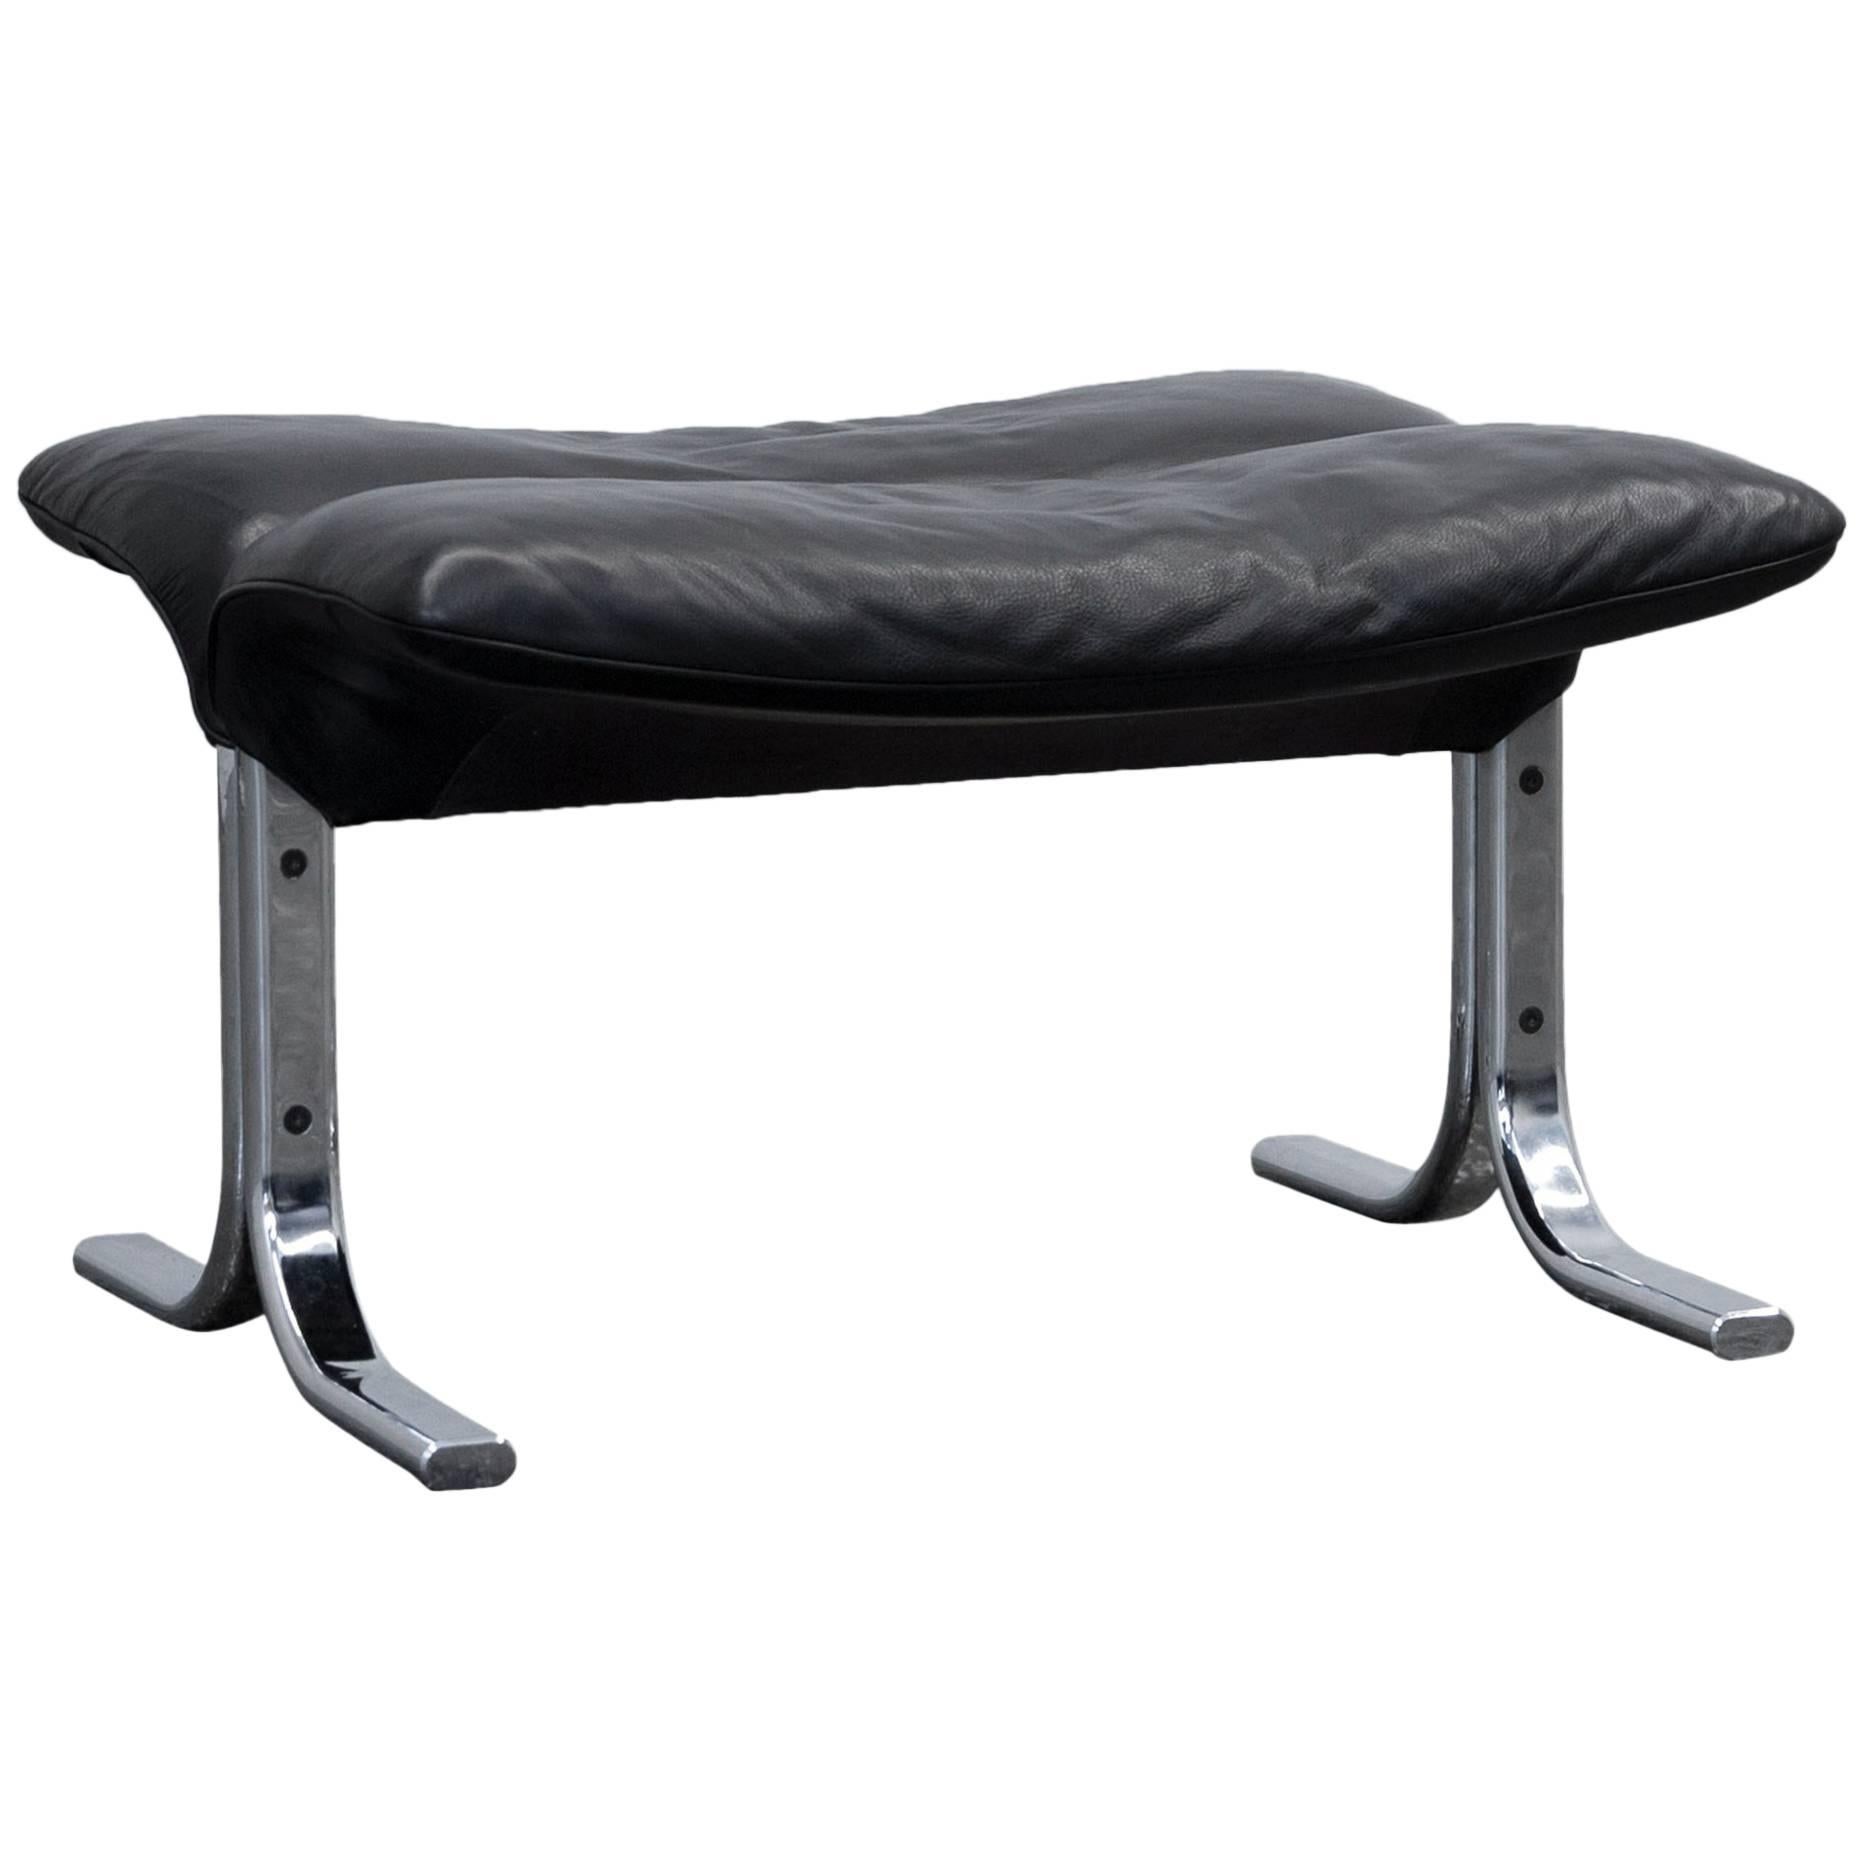 De Sede Designer Footstool Leather Black Chrome Footrest Pouff Modern